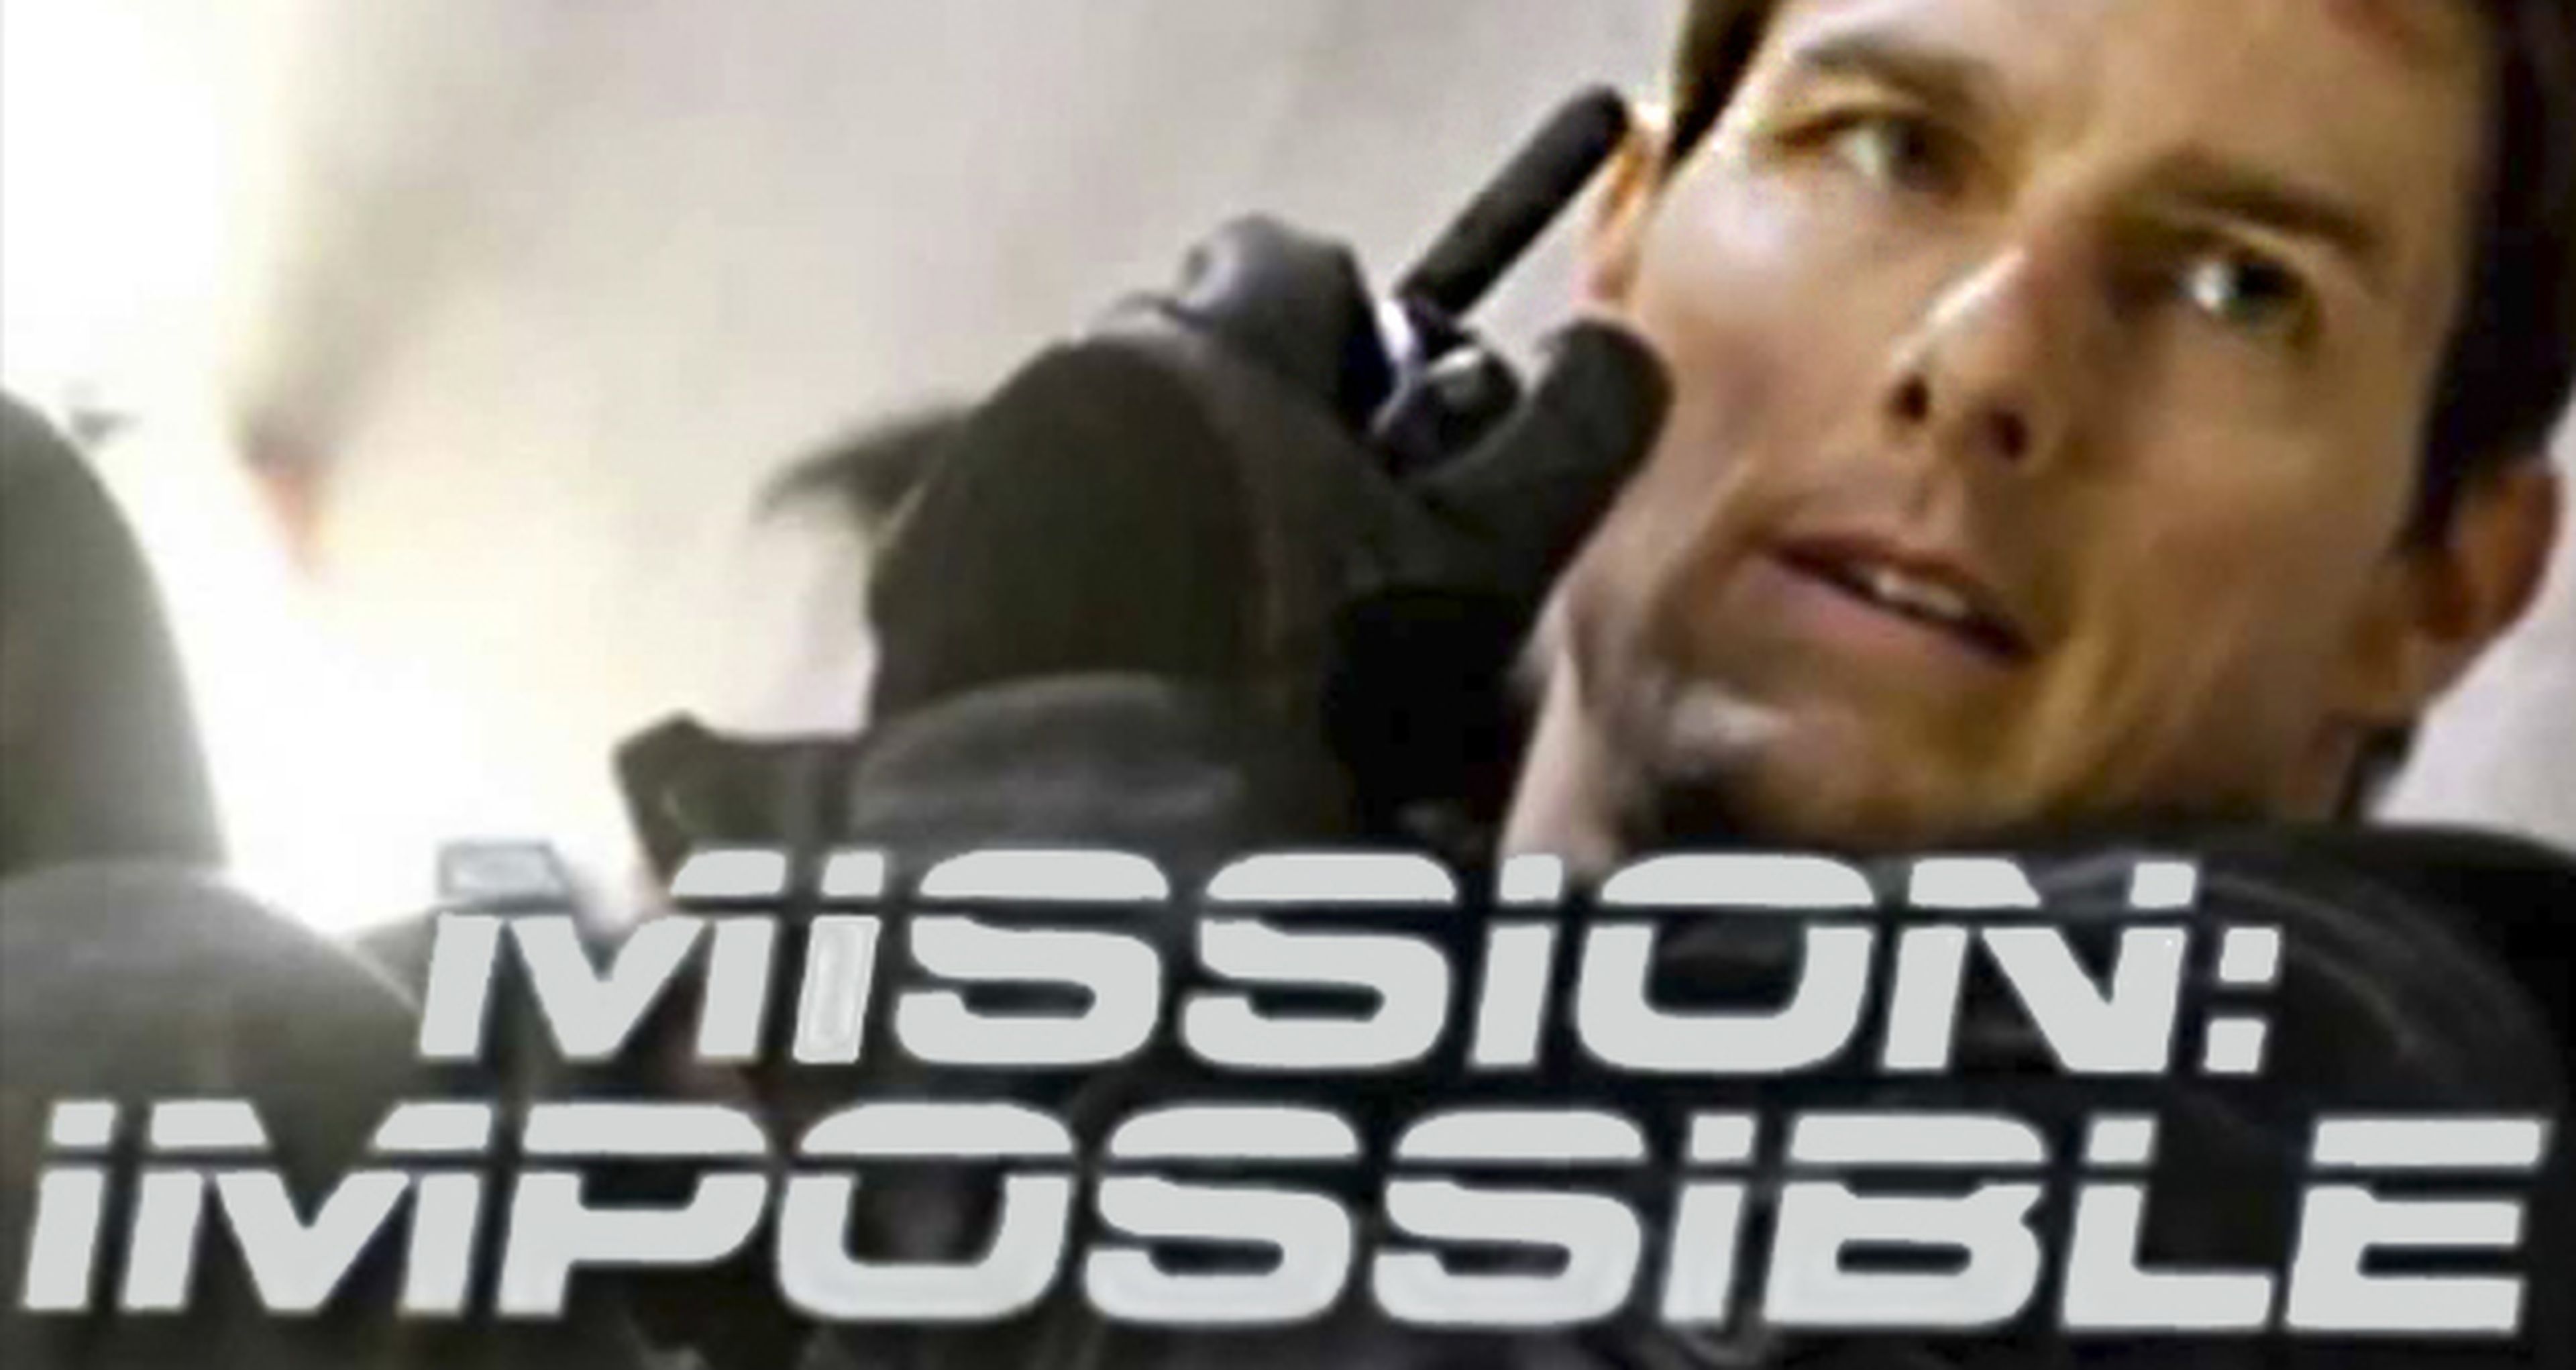 Misión imposible 6 podría empezar a rodarse en 2016 como insinúa Tom Cruise